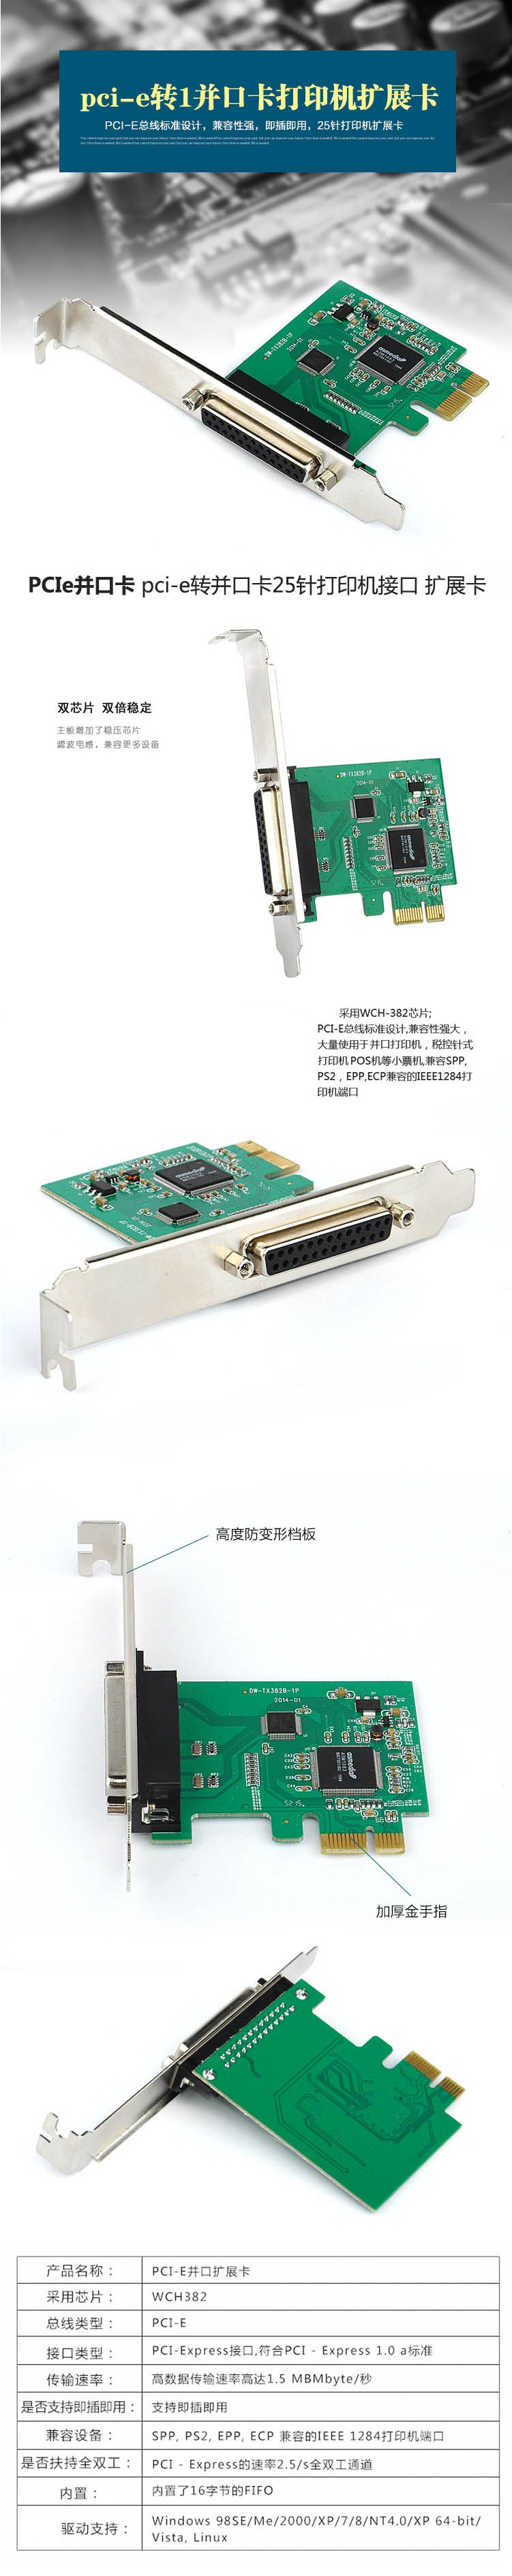 品怡 台式机PCIEx1并口卡 PCI-E转IEEE1284扩展卡 LPT打印机接-淘宝网.jpg